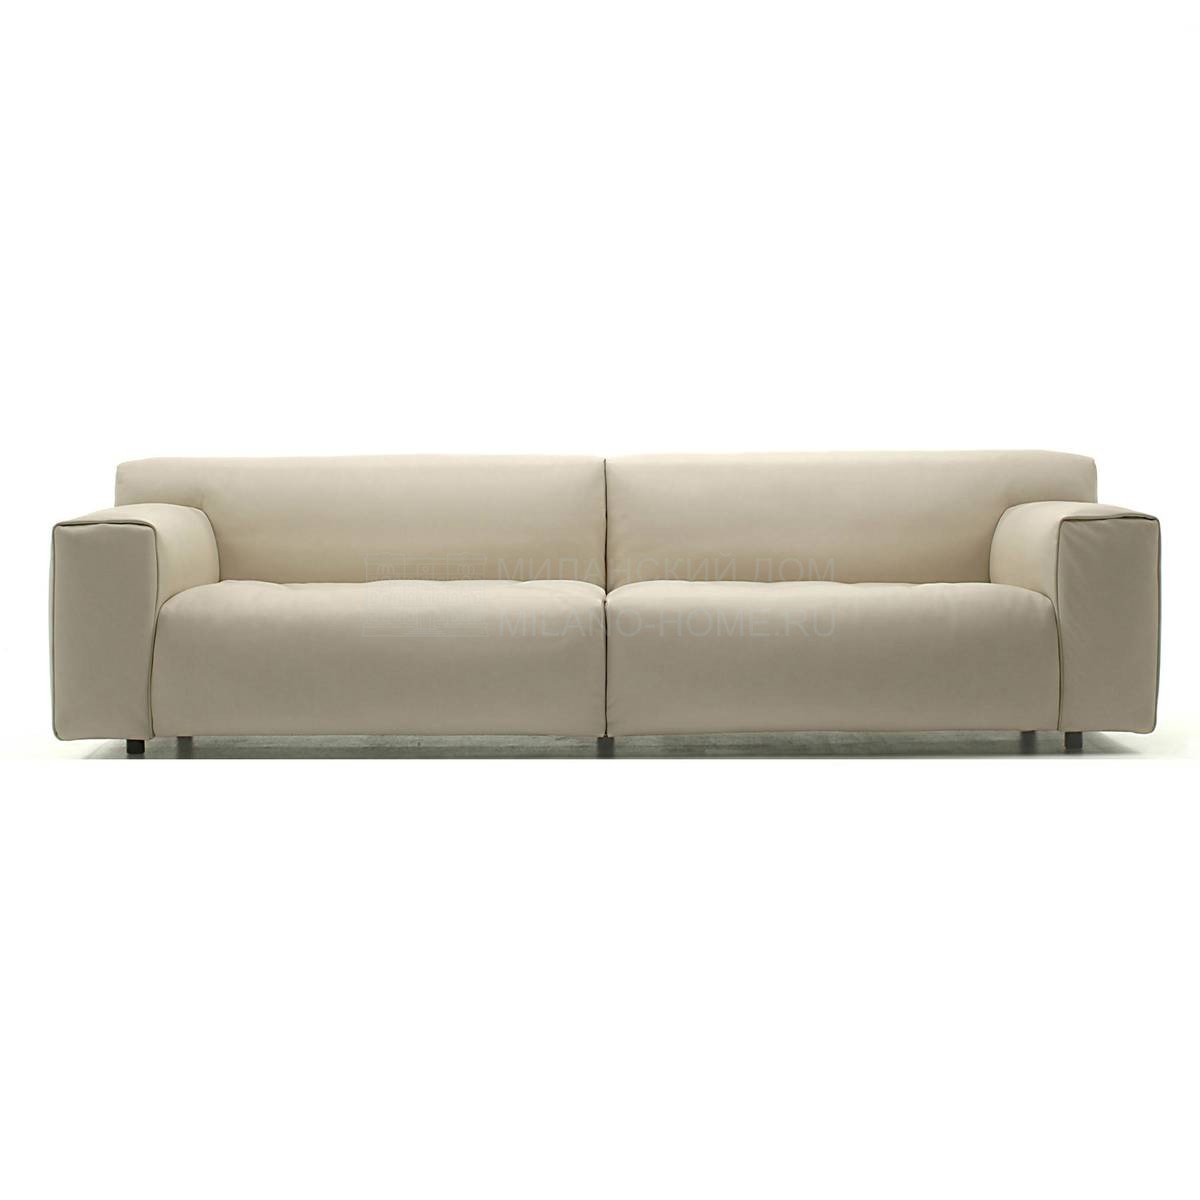 Прямой диван Softwall sofa из Италии фабрики LIVING DIVANI